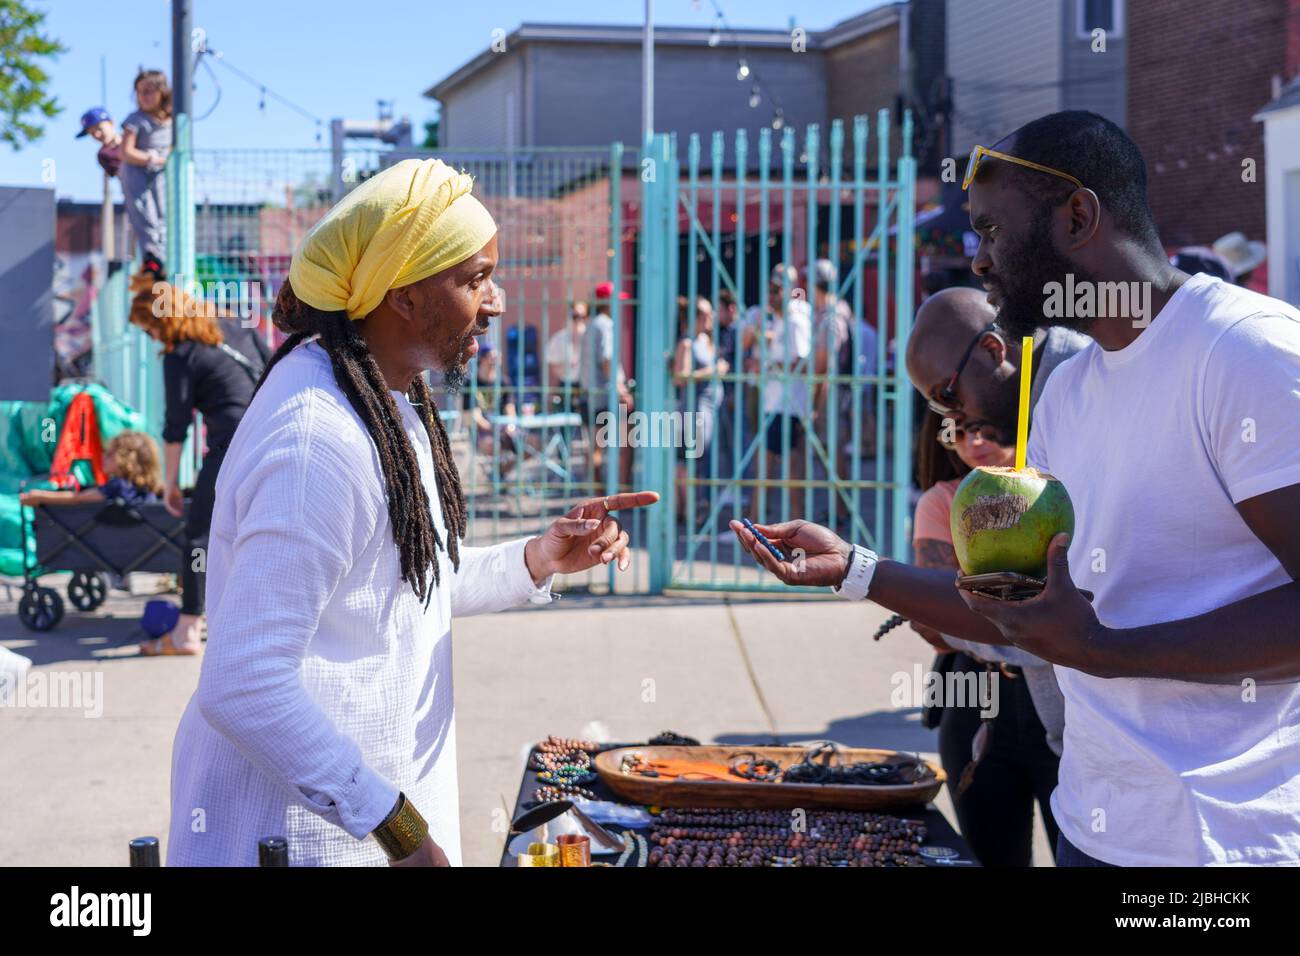 Ein Mann afro-karibischer Abstammung verkauft während des Do West Festivals in einem Kiosk Souvenirs. Stockfoto